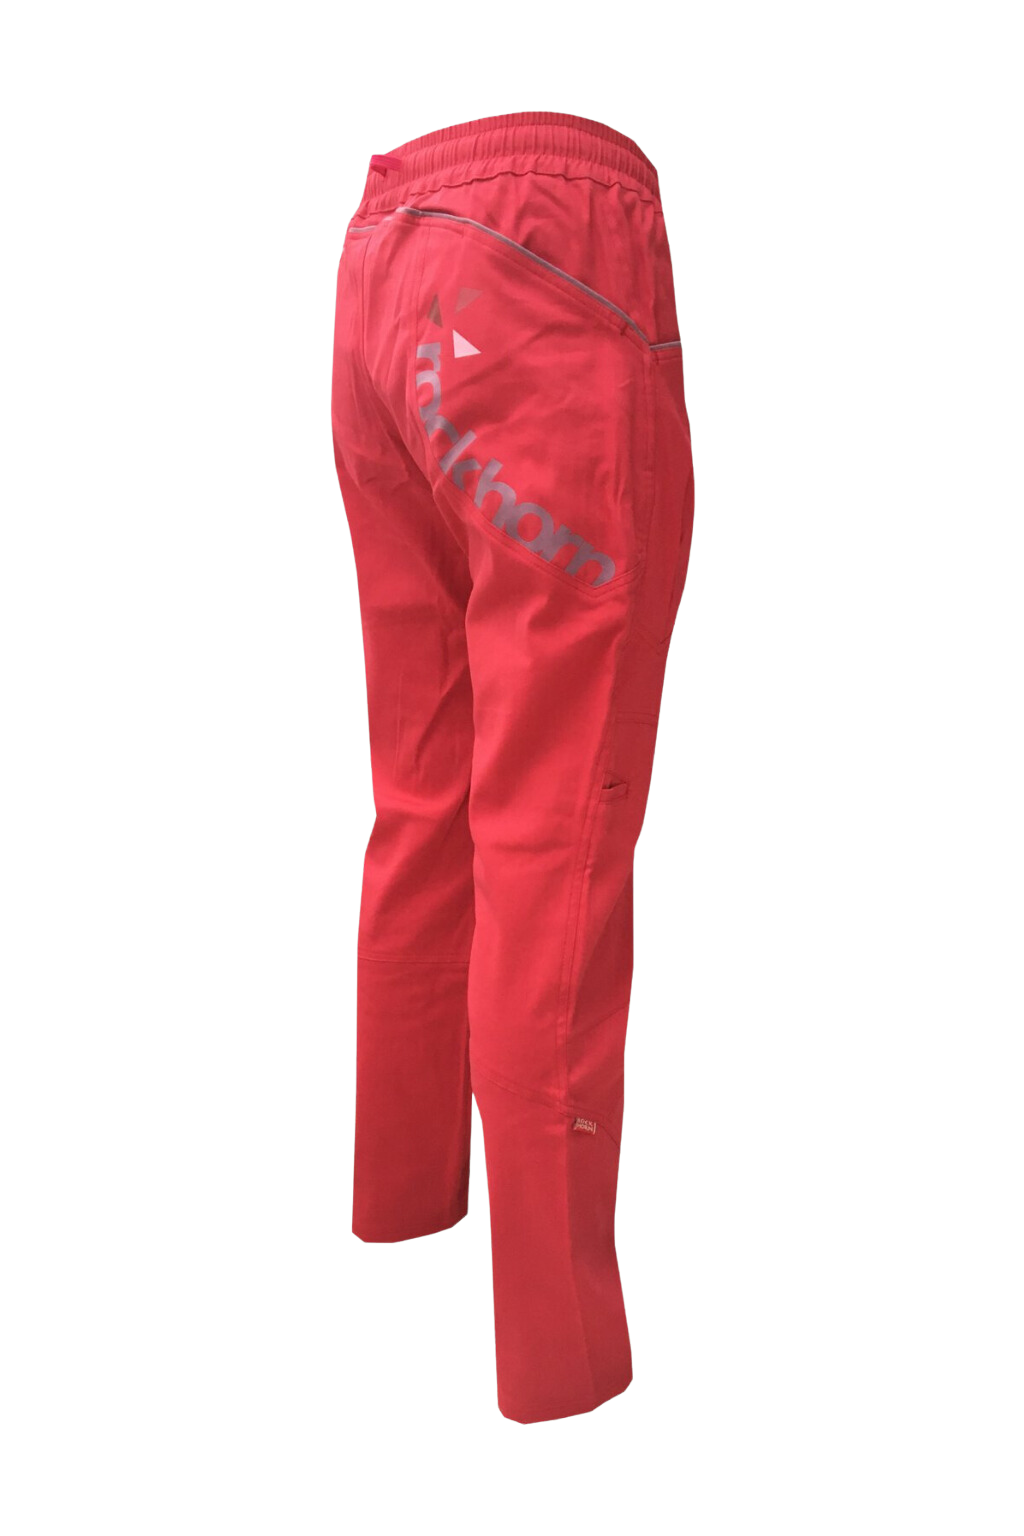 dámské kalhoty UNIVERSITY / růžové Velikost: L